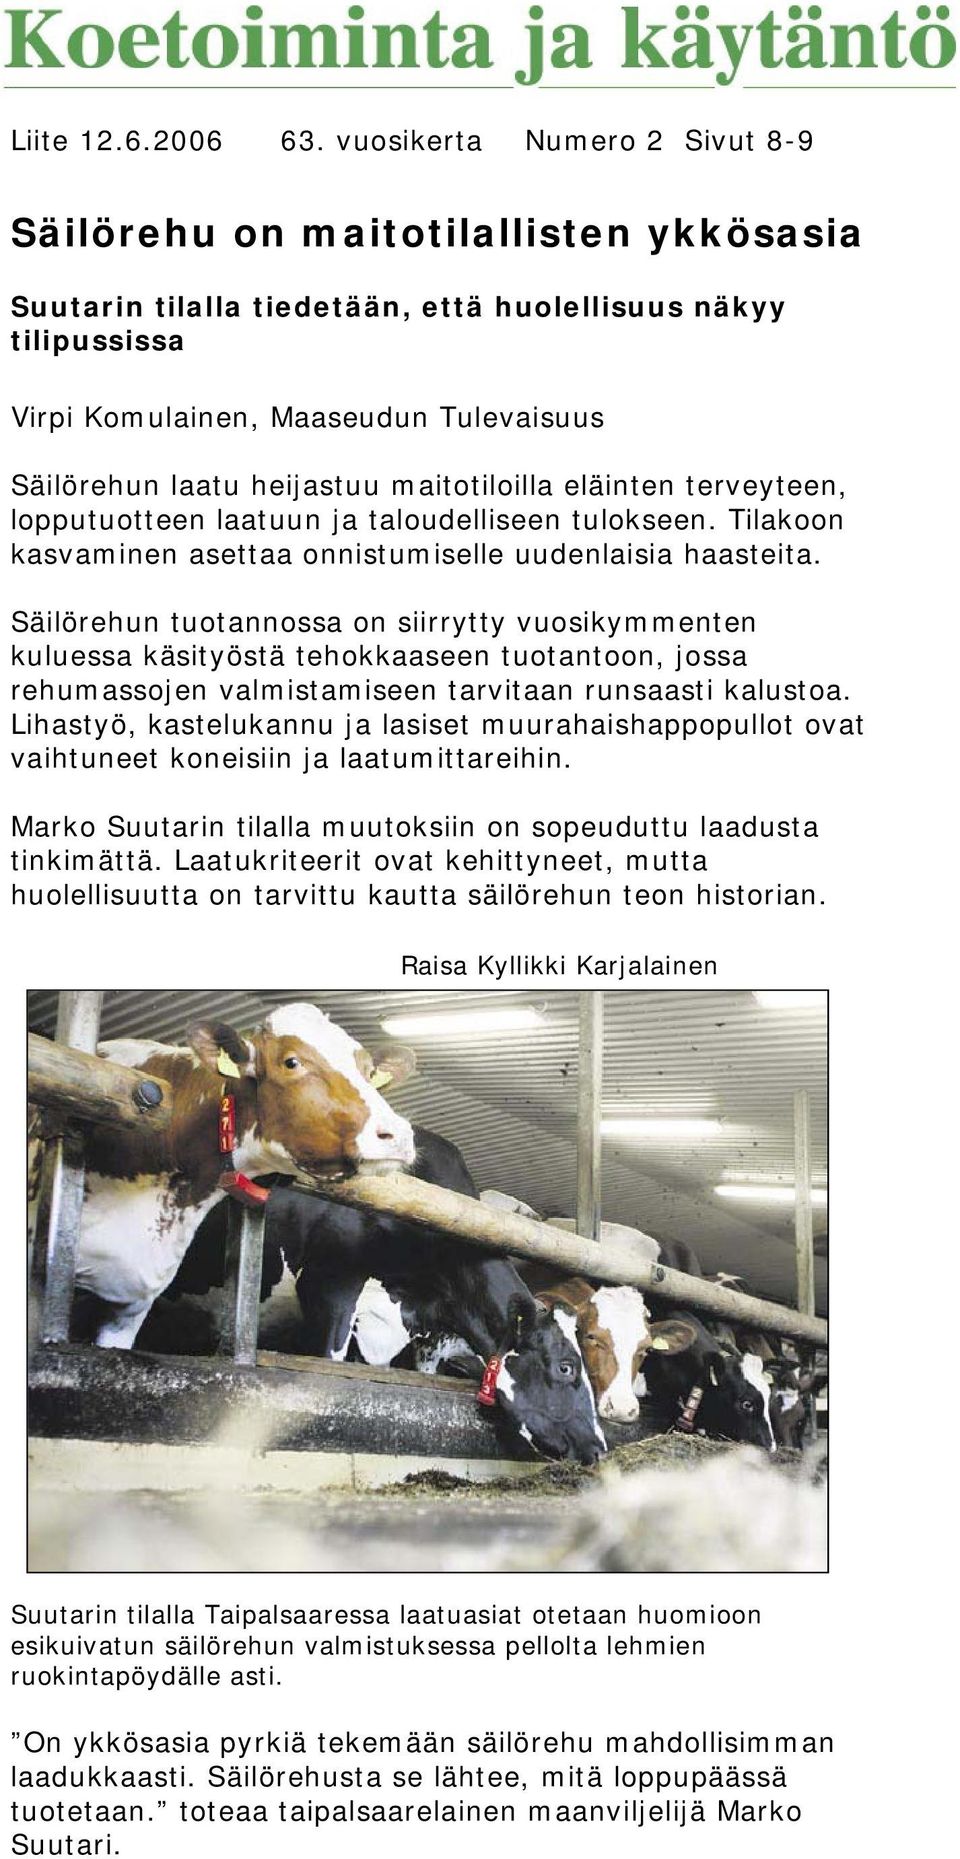 heijastuu maitotiloilla eläinten terveyteen, lopputuotteen laatuun ja taloudelliseen tulokseen. Tilakoon kasvaminen asettaa onnistumiselle uudenlaisia haasteita.